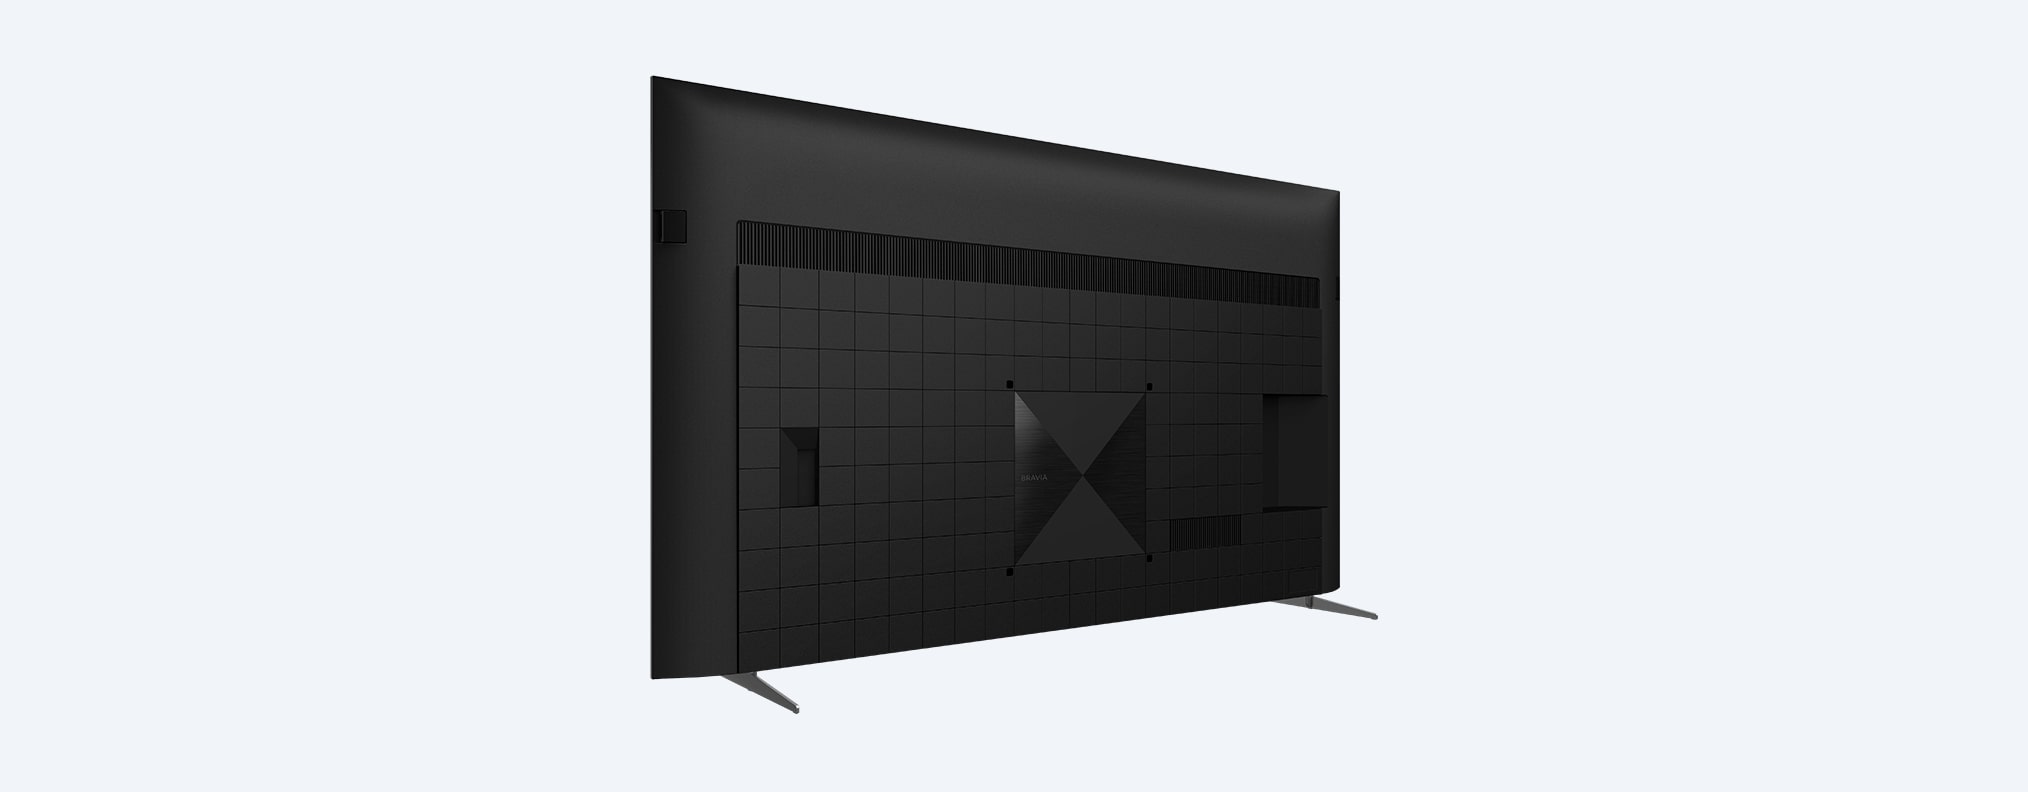 X90K / X93K / X94K | BRAVIA XR | Full Array LED | 4K Ultra HD | טווח דינמי גבוה (HDR) | טלוויזיה חכמה (Google TV)